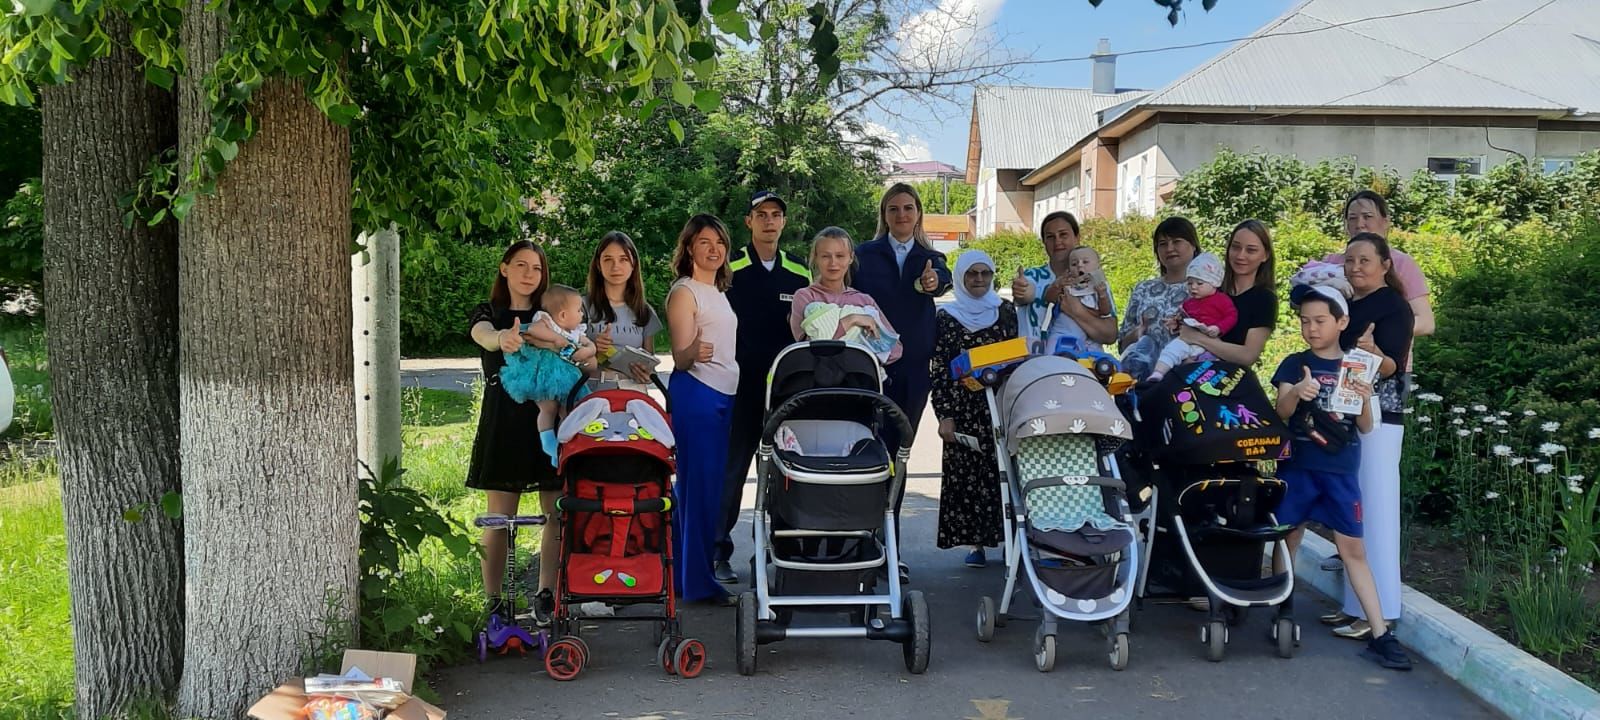 ОГИБДД района подарили автолюльку победителю конкурса "Яркая детская коляска"